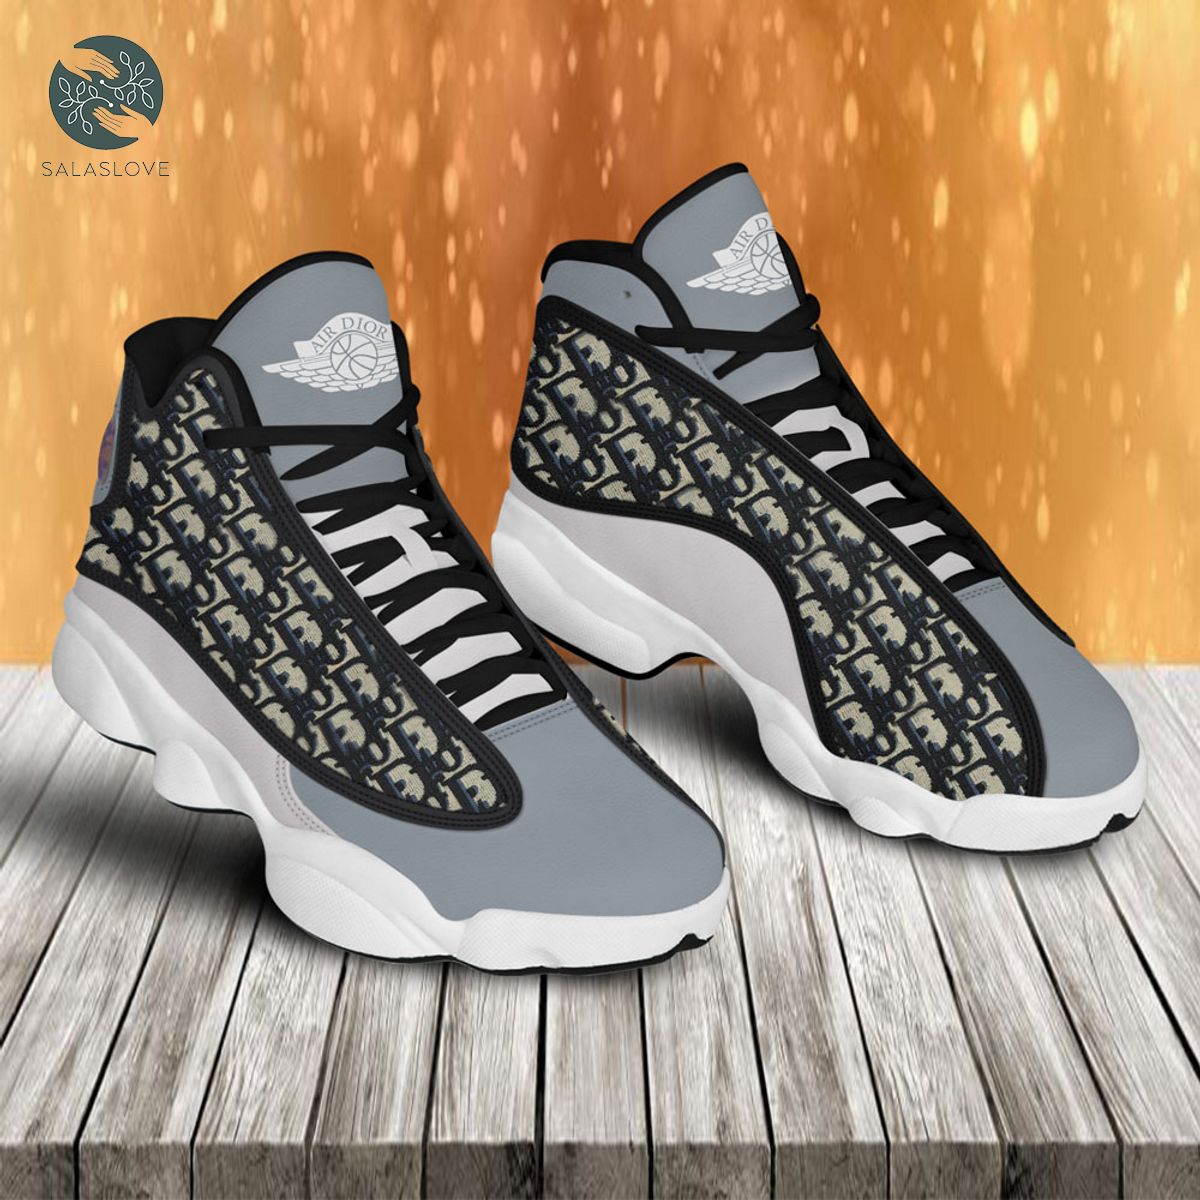 Dior Grey Air Jordan 13 Sneaker Shoes Gifts For Men Women